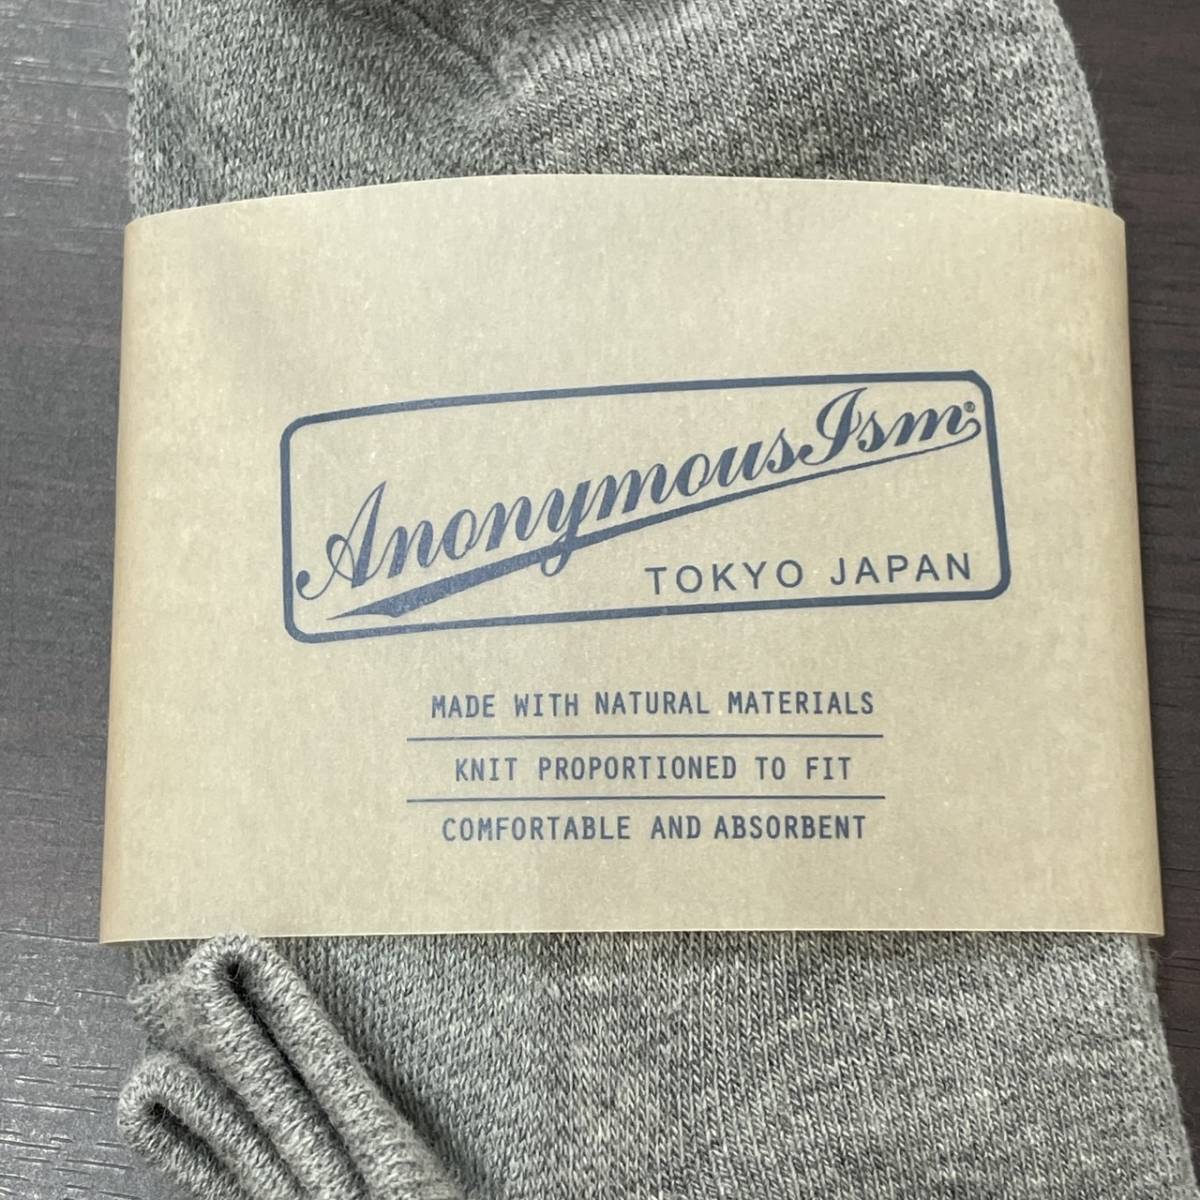 5セット 未使用品 /23-25cm/ ANONYMOUSISM 靴下 くつ下 ソックス グレー アンクル カジュアル 定番 日本製 くるぶし 灰色 アノニマスイズム